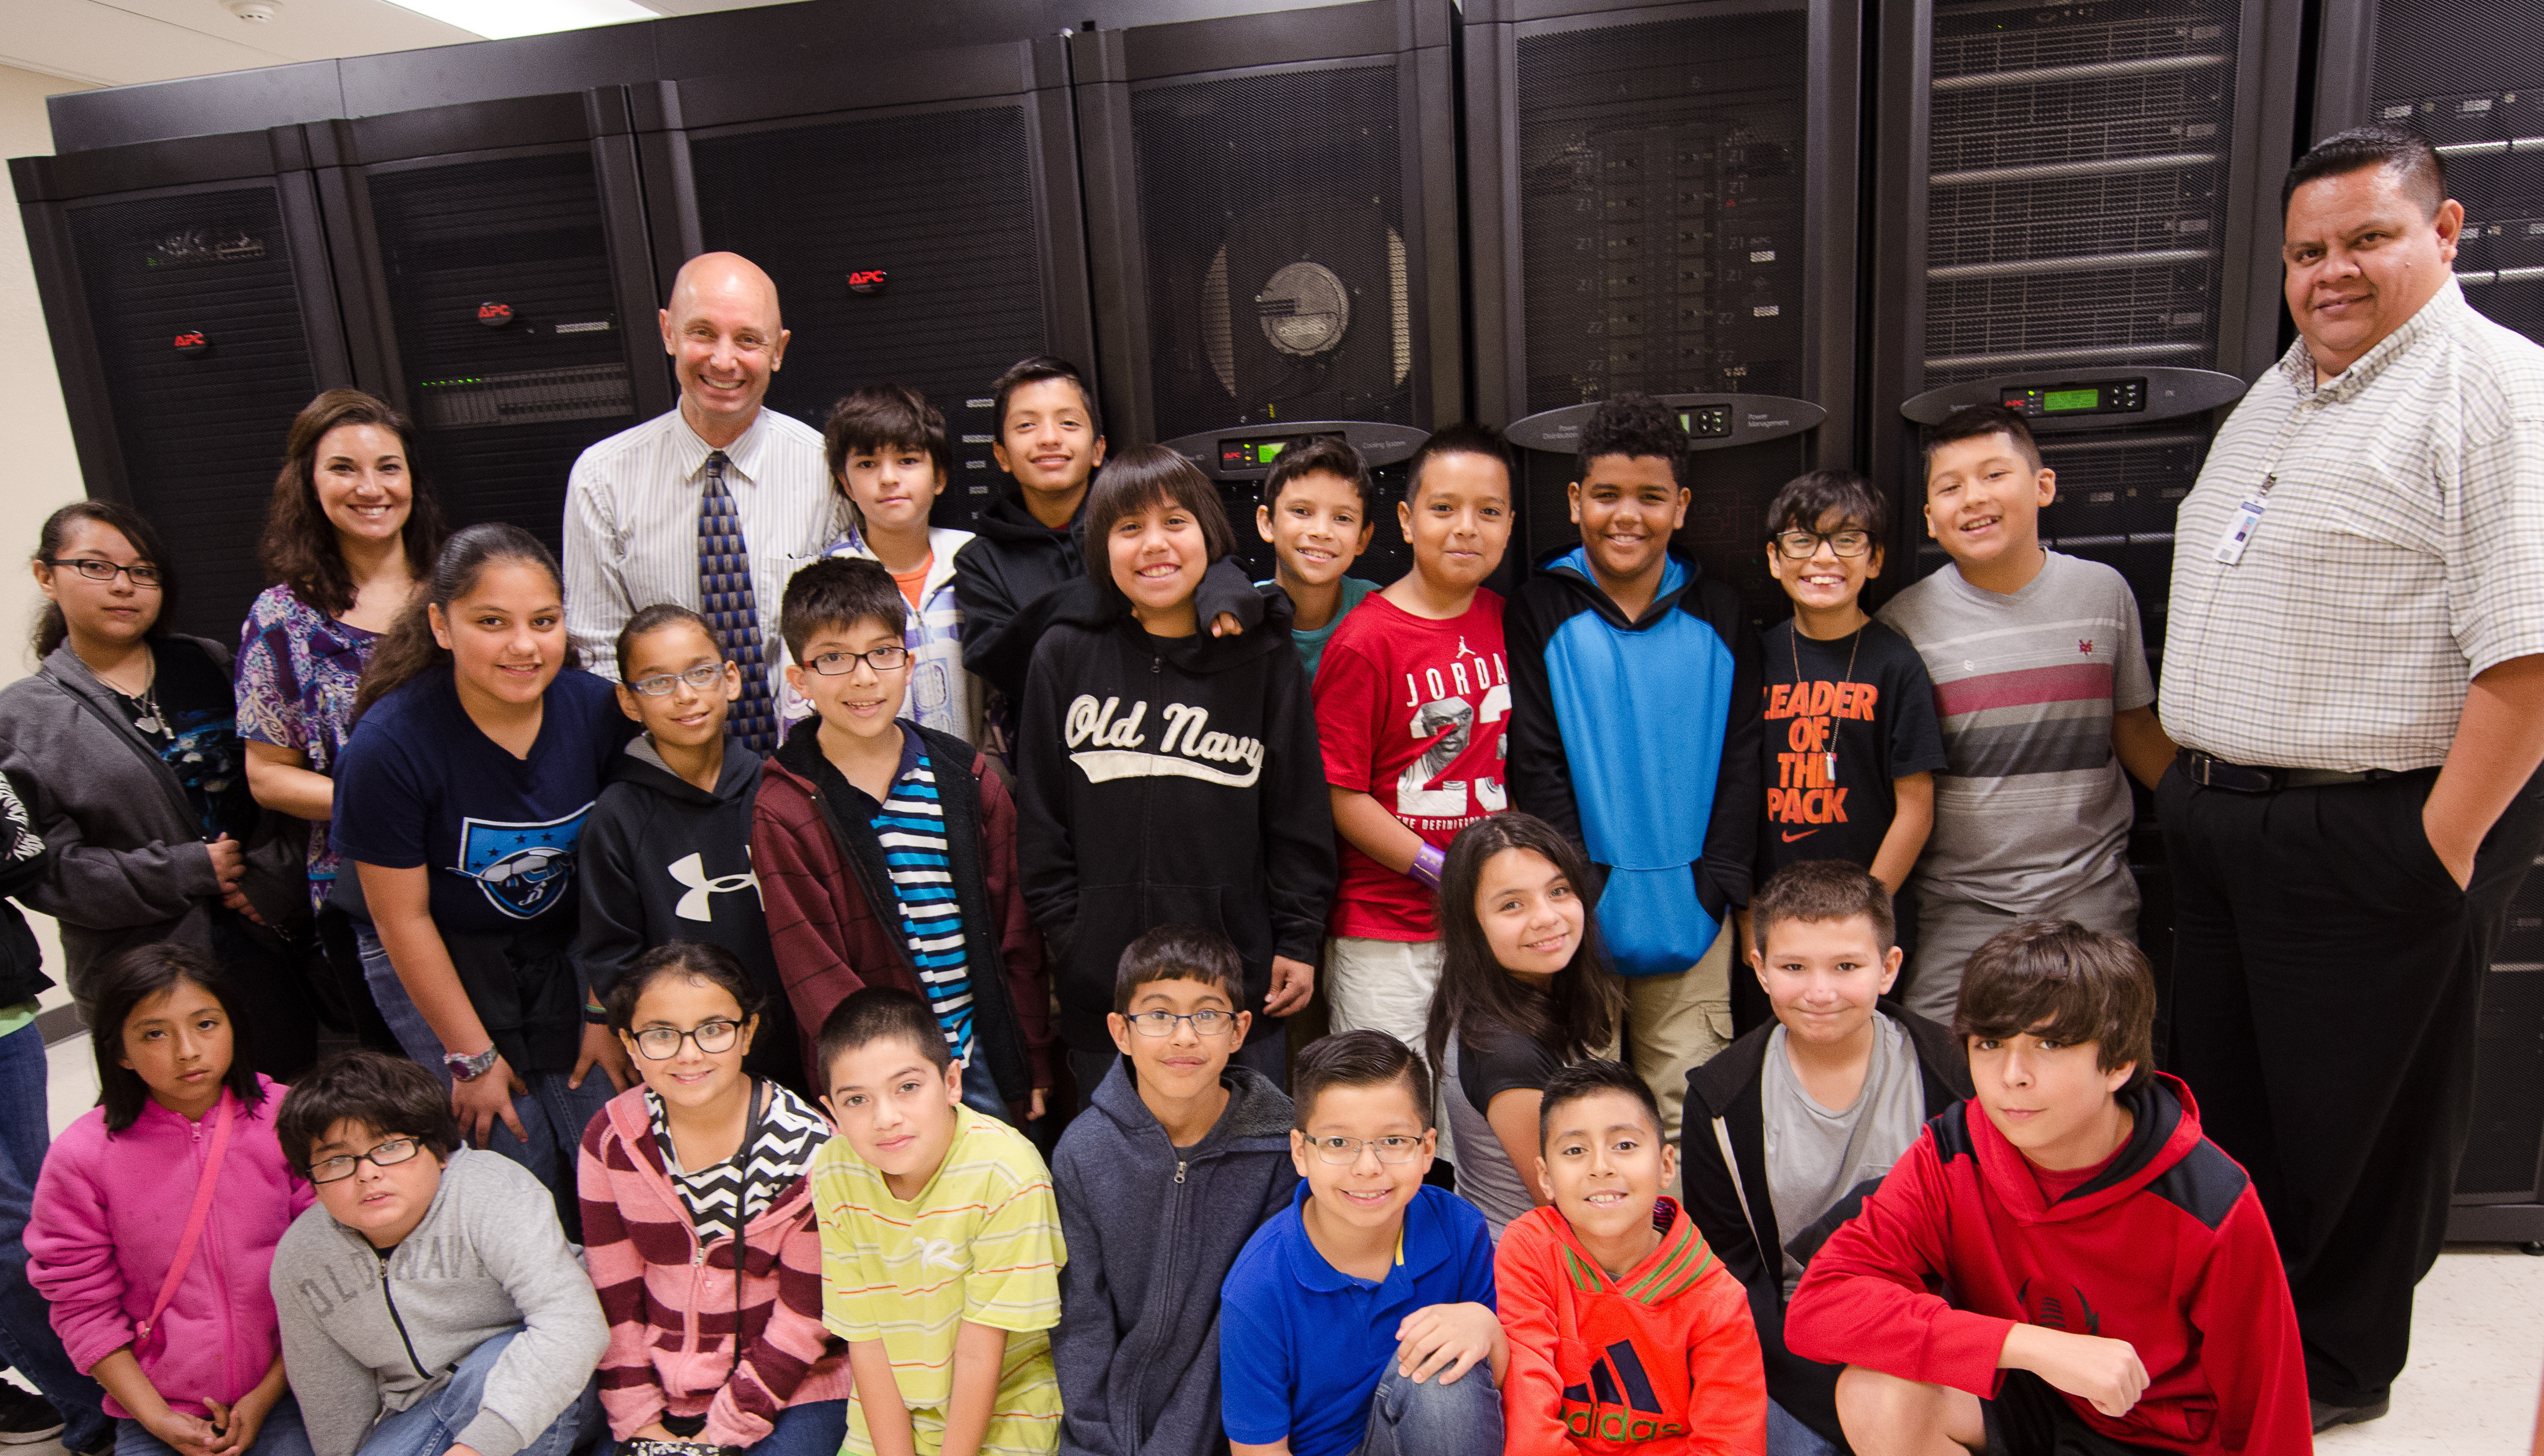 Bonham Elementary students tour HCISD technology center for Career Day